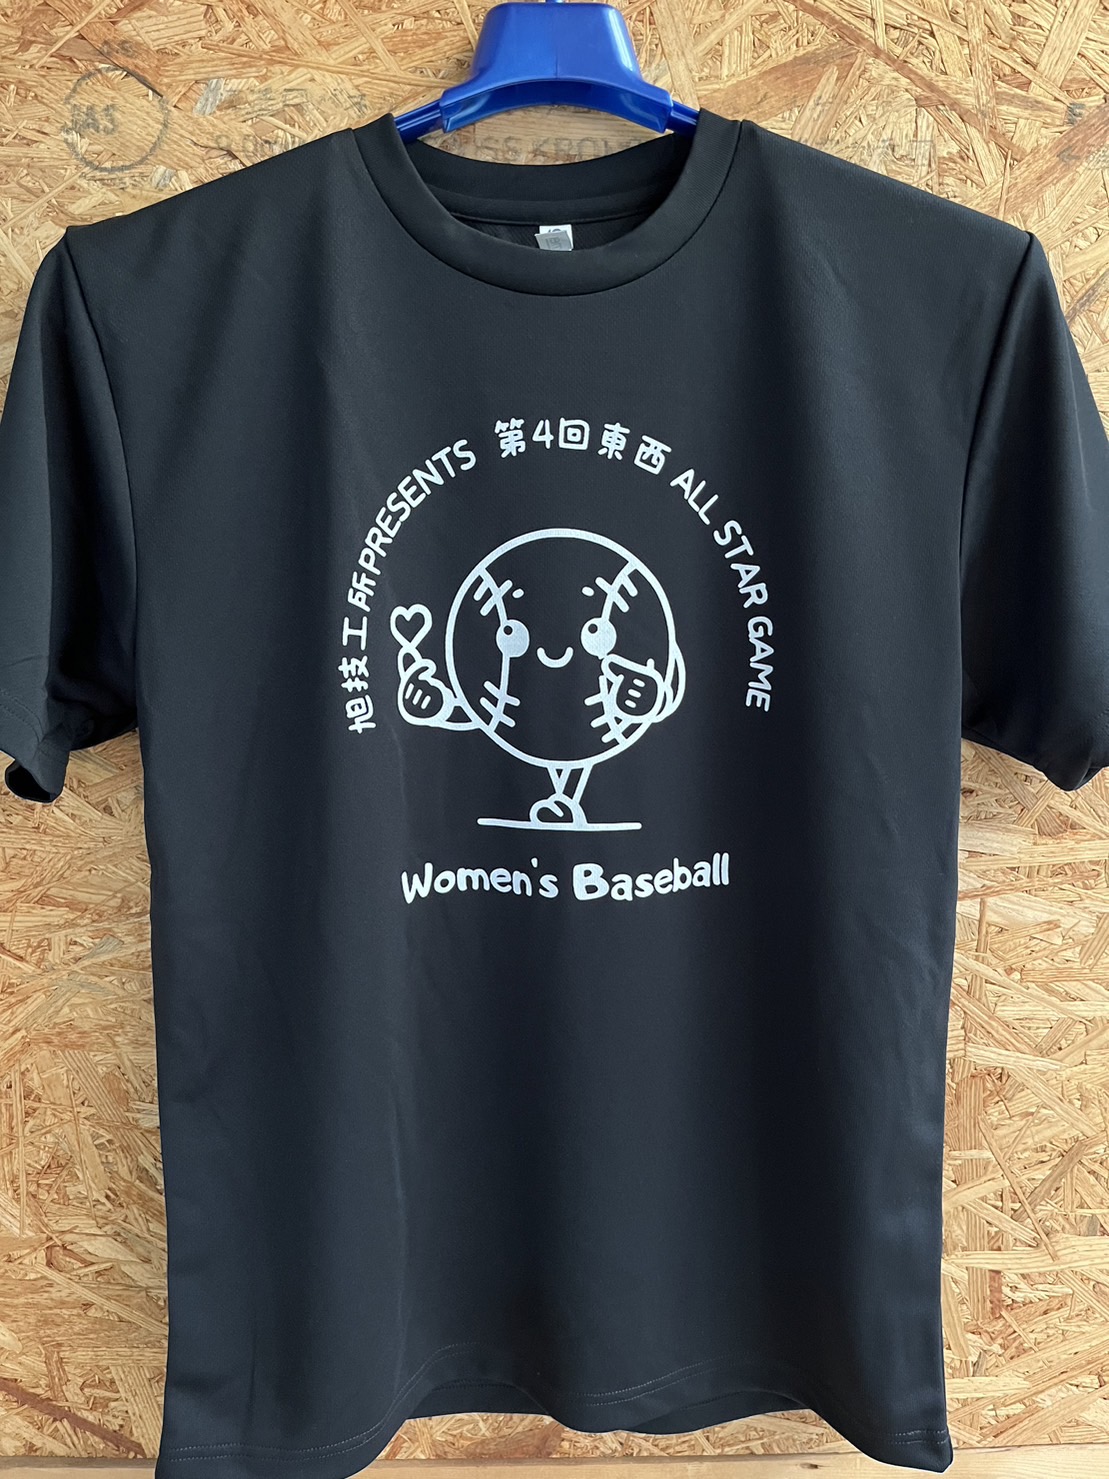 クラウドファンディング返礼品、発送準備中… | 関東女子硬式野球連盟ホームぺージ